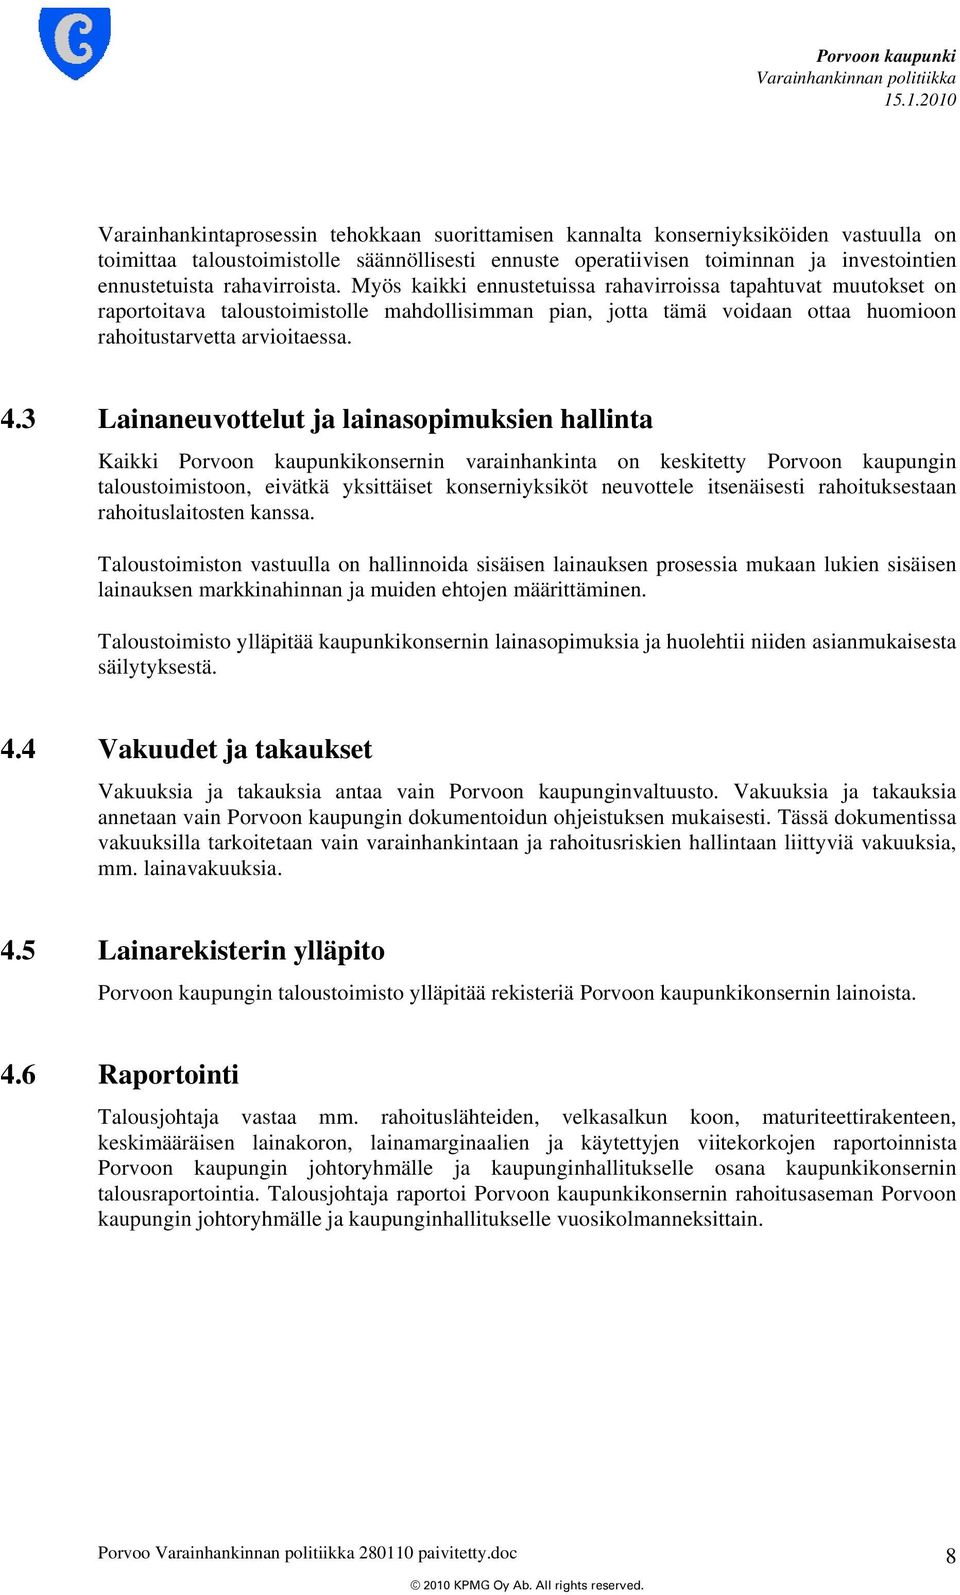 3 Lainaneuvottelut ja lainasopimuksien hallinta Kaikki Porvoon kaupunkikonsernin varainhankinta on keskitetty Porvoon kaupungin taloustoimistoon, eivätkä yksittäiset konserniyksiköt neuvottele